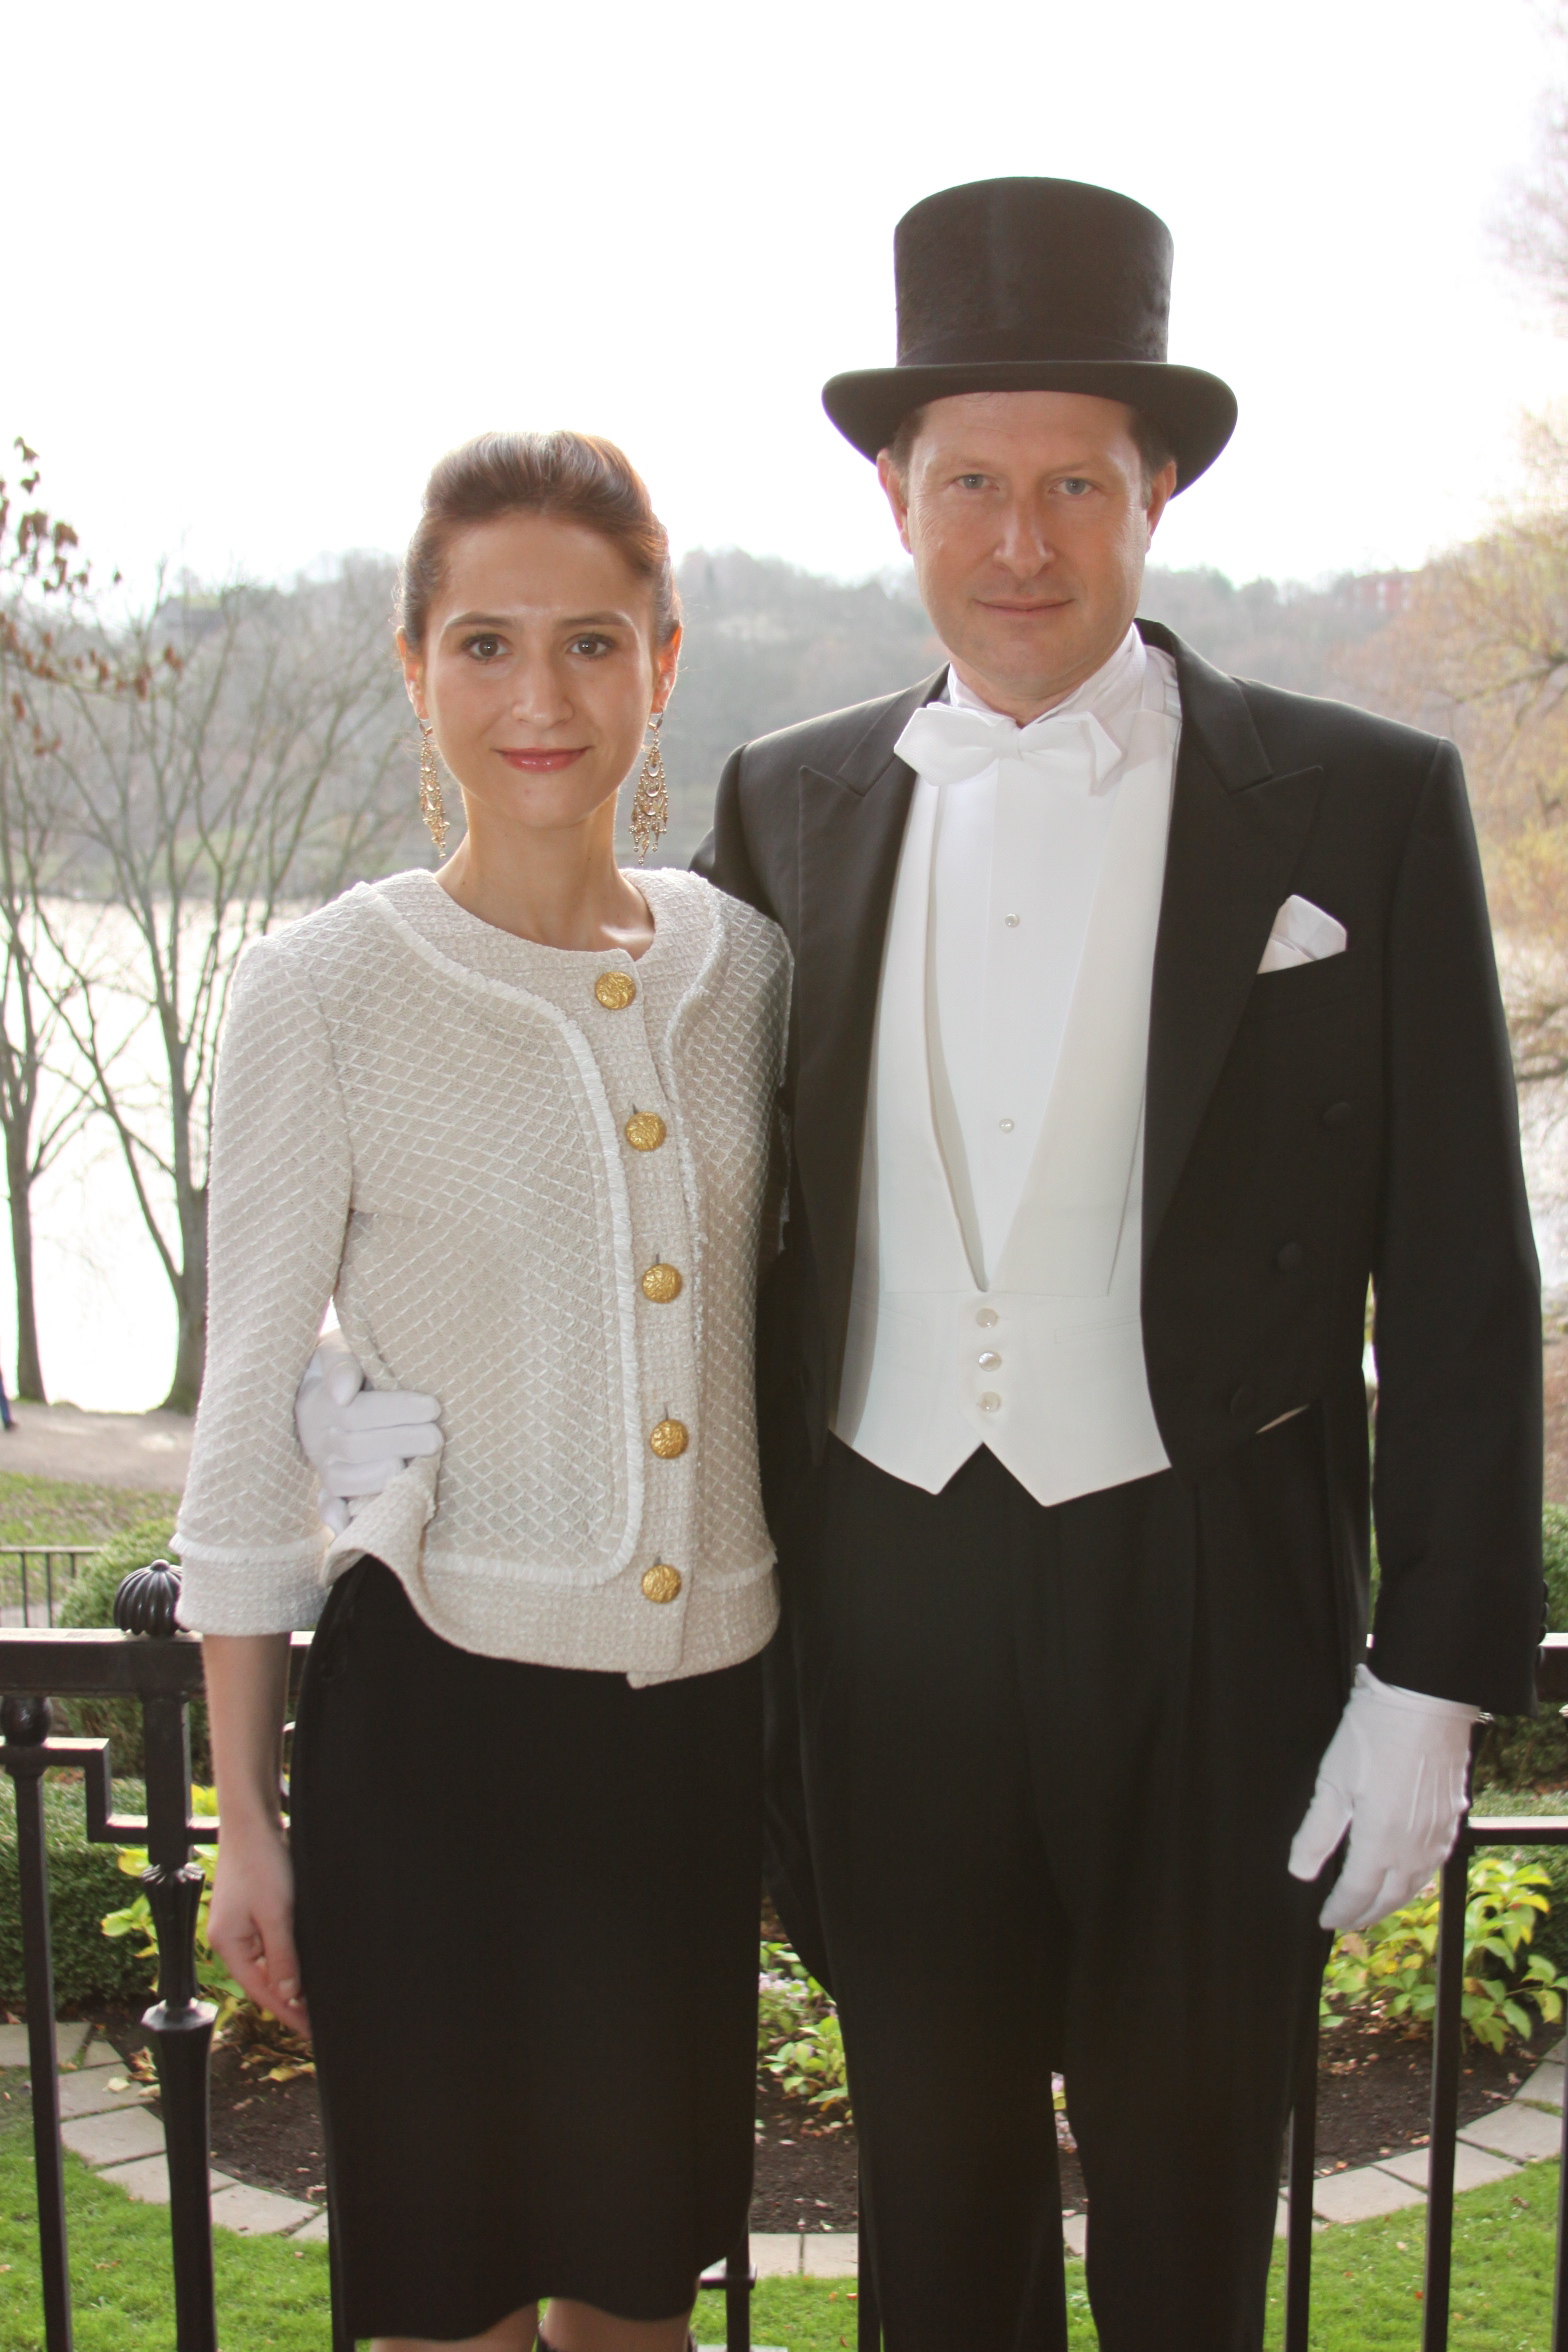 Ambassador and Mrs. Brzezinski